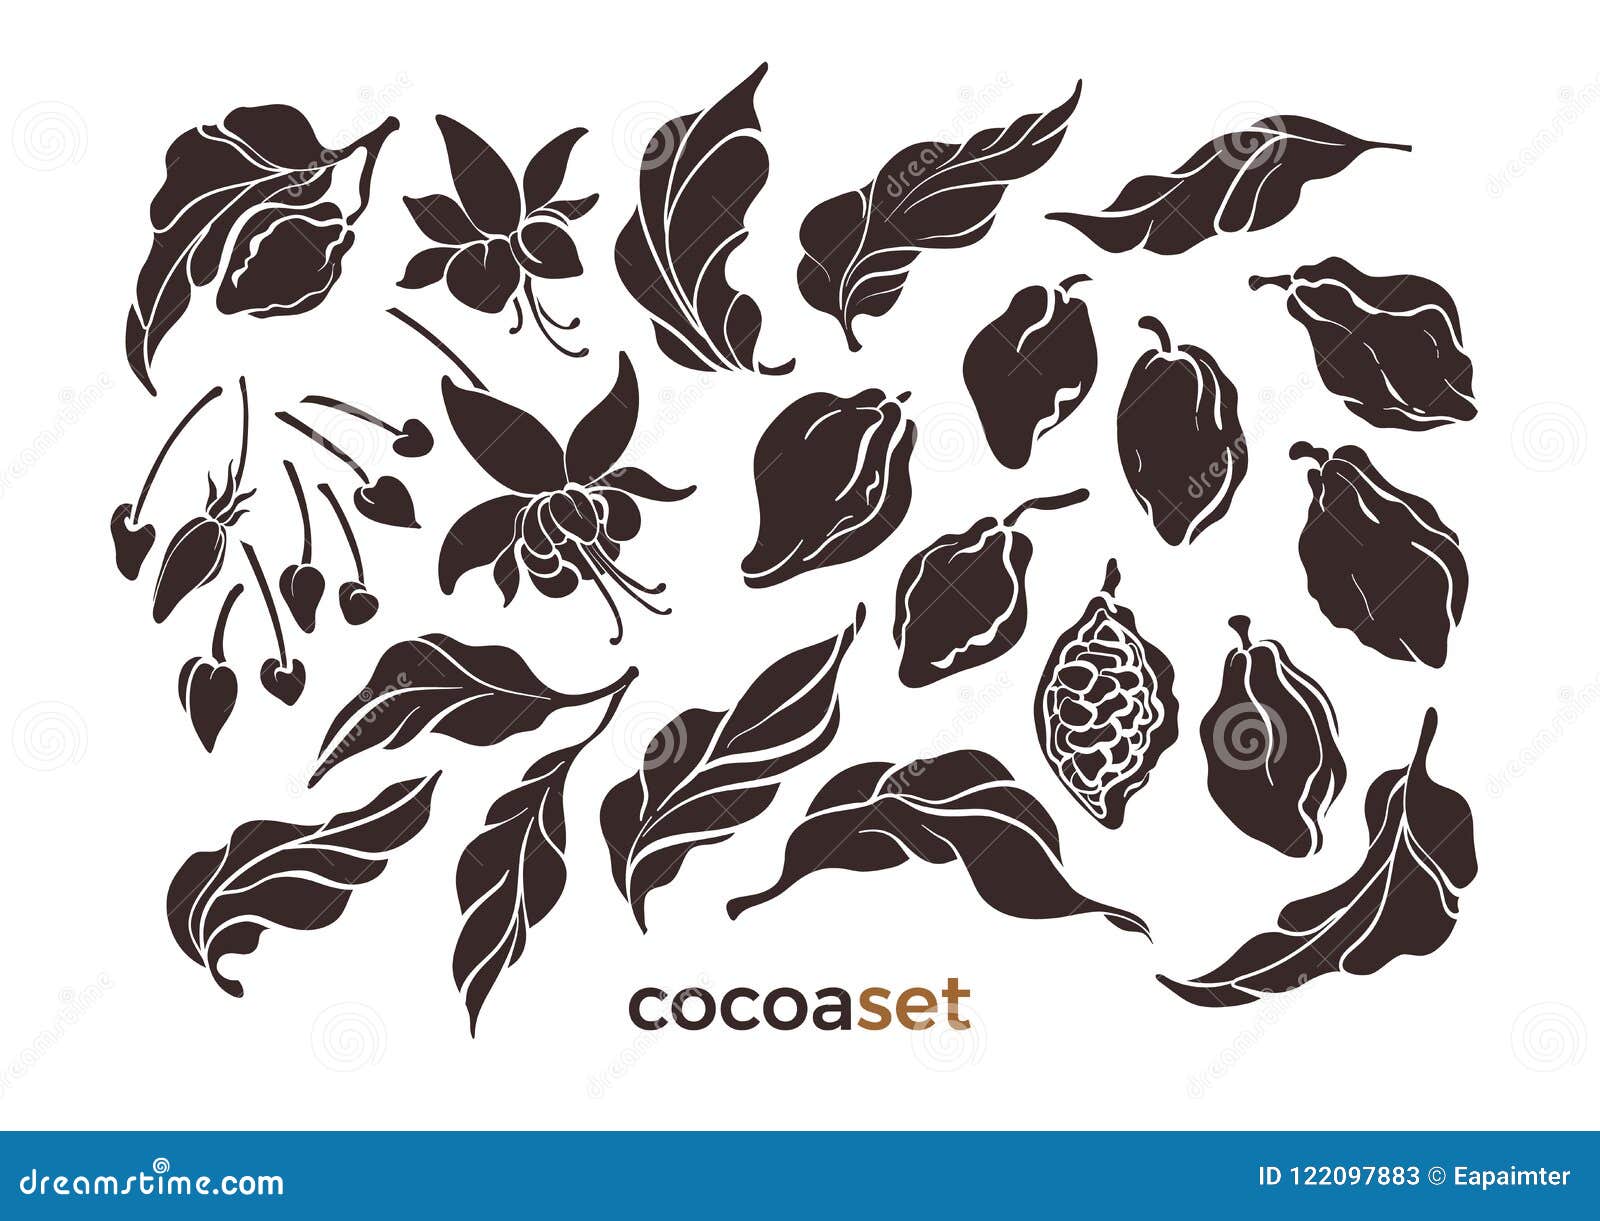 Cocoa Pod And Leaf - The Upper Bar- Vector | CartoonDealer.com #49479803